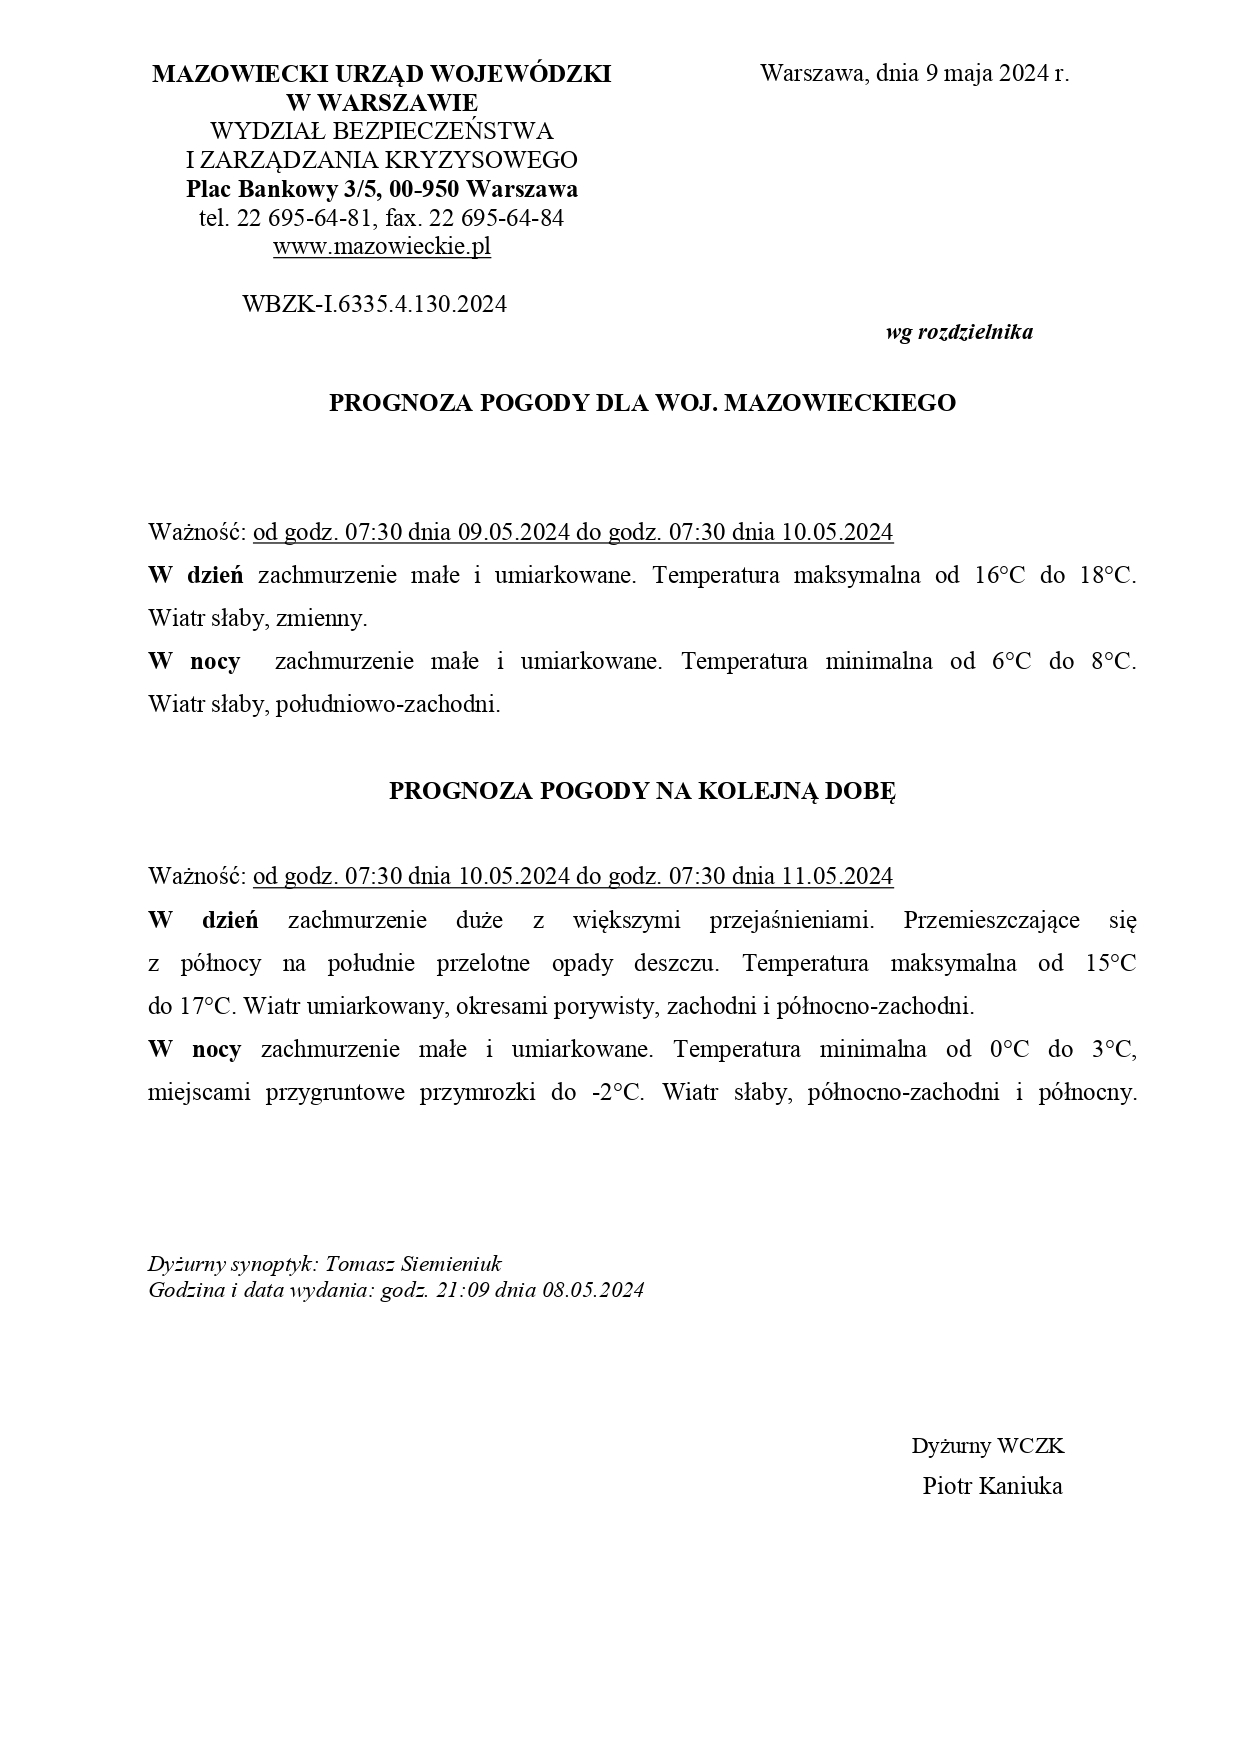 Prognoza pogody dla Mazowsza 2024 05 09_page-0001